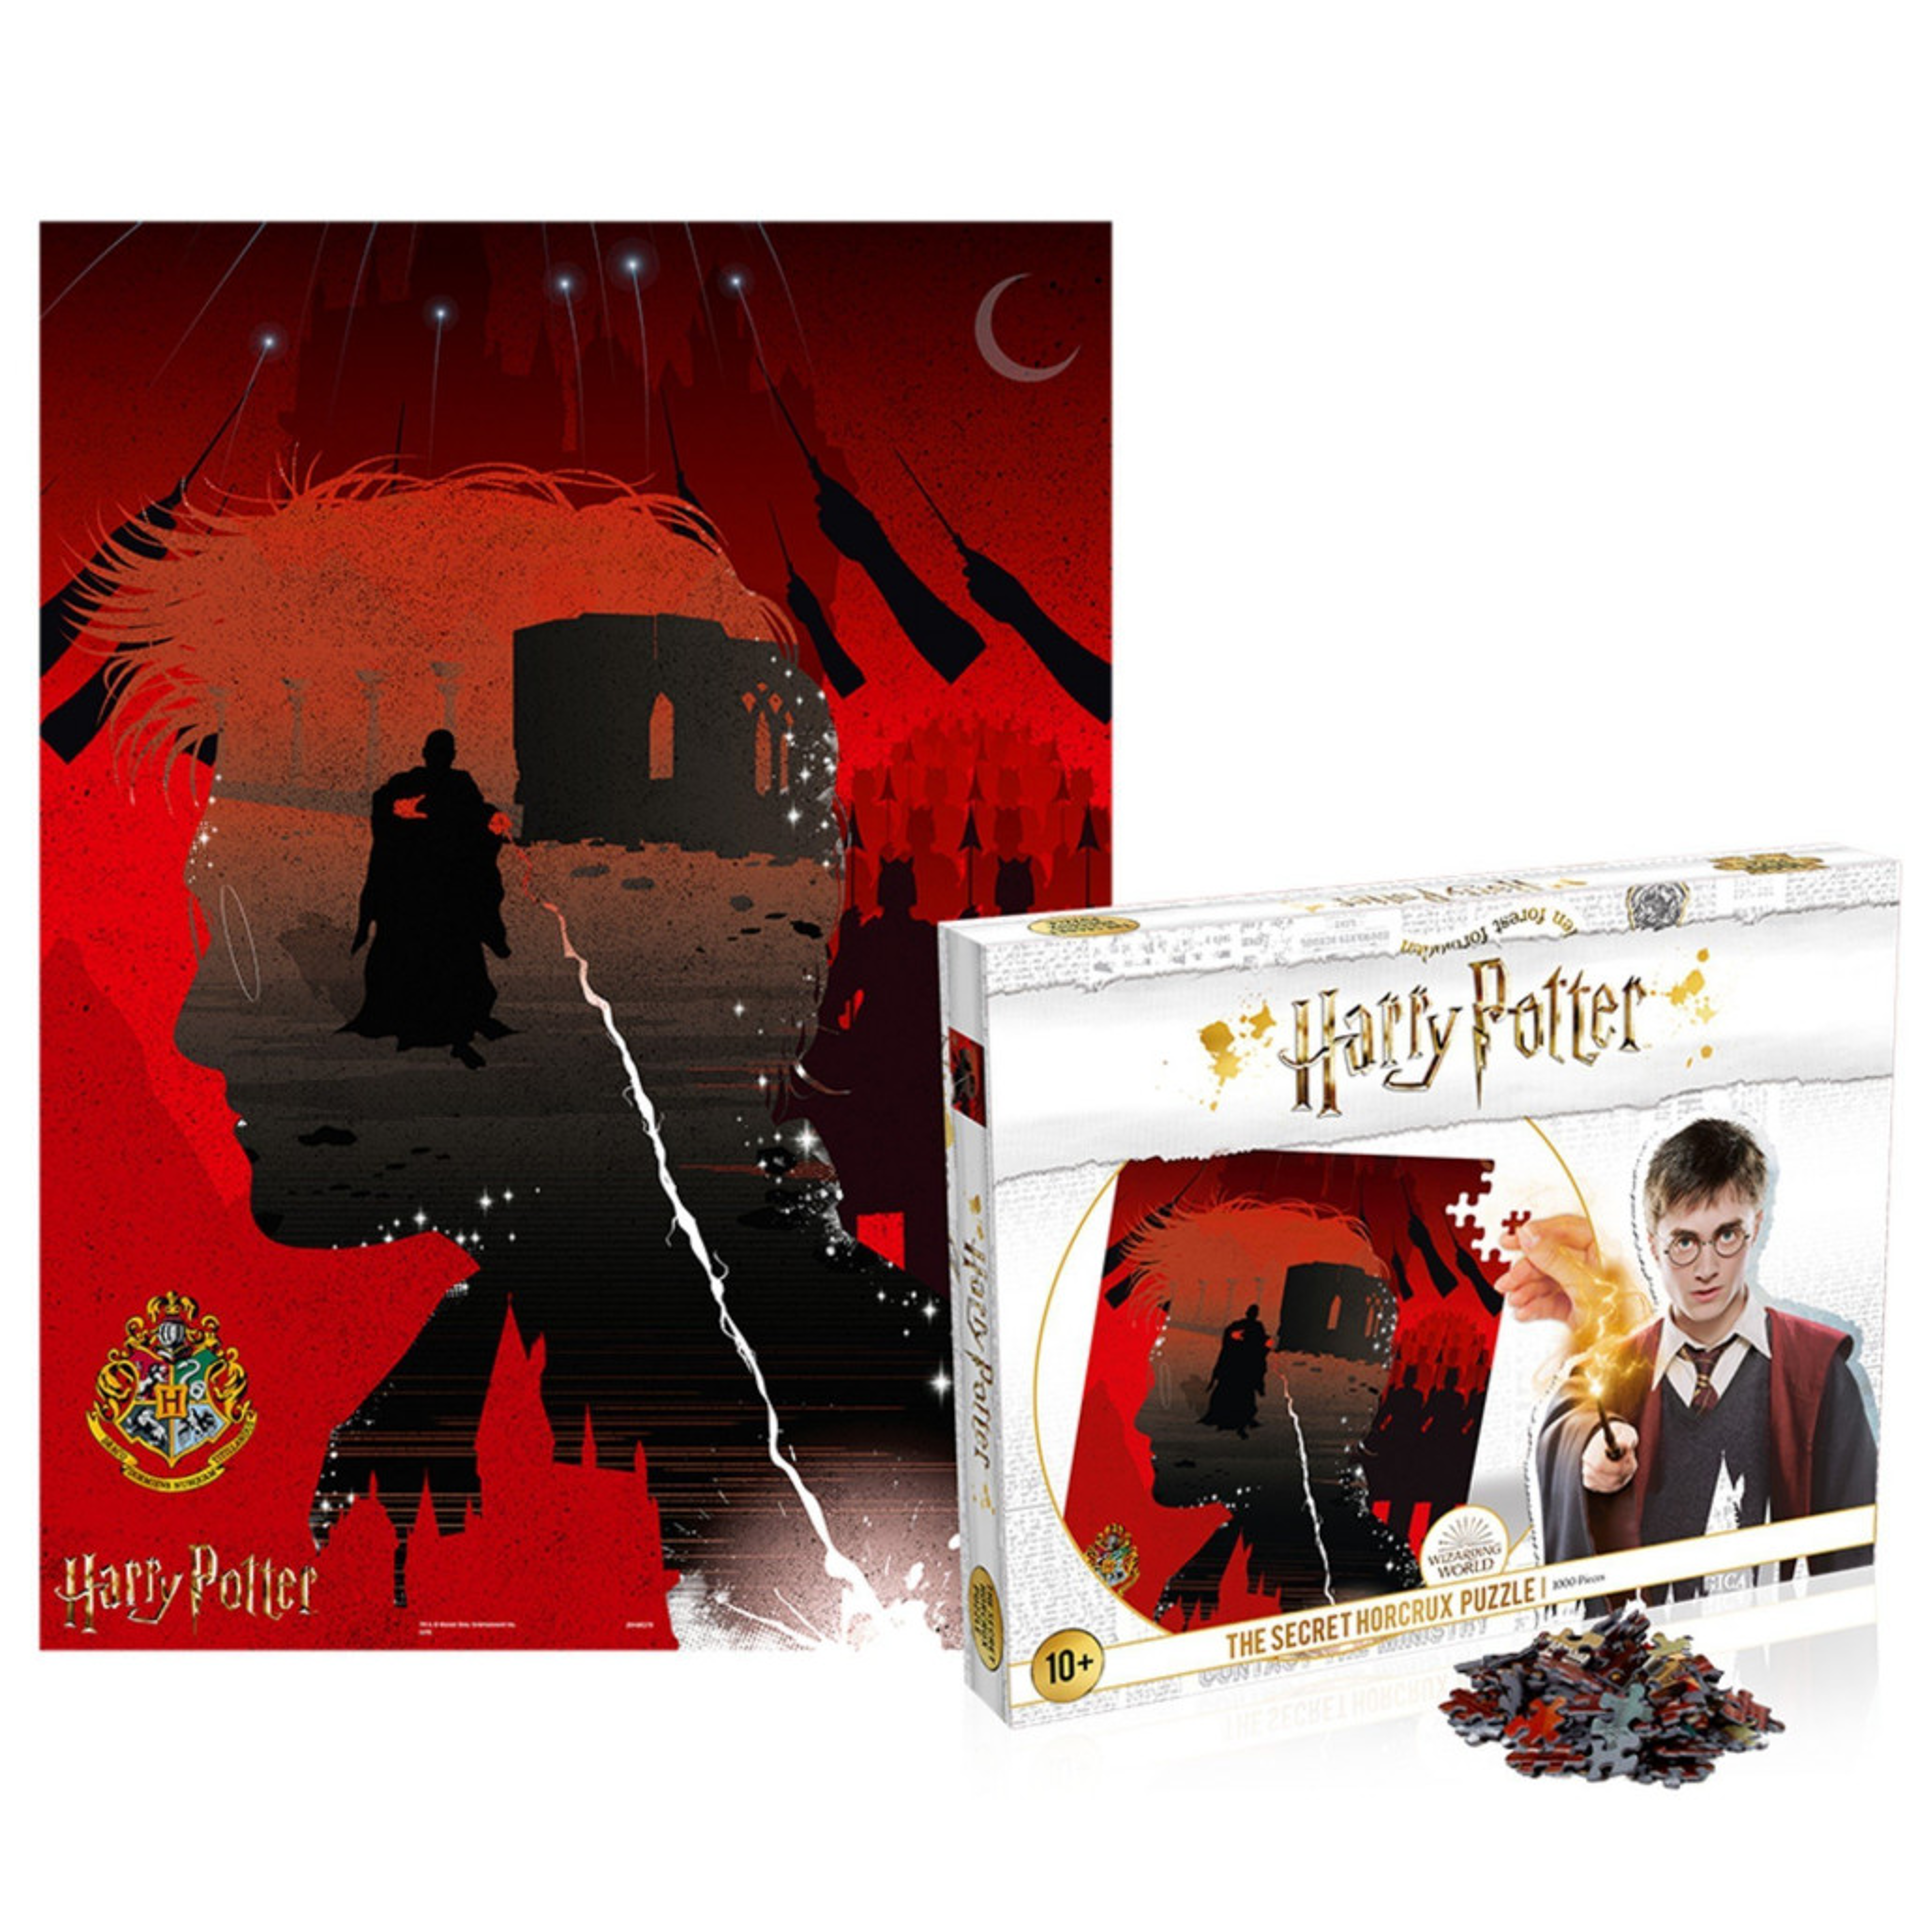 Harry Potter - Puzzle Secret Horcrux 1000 pcs 